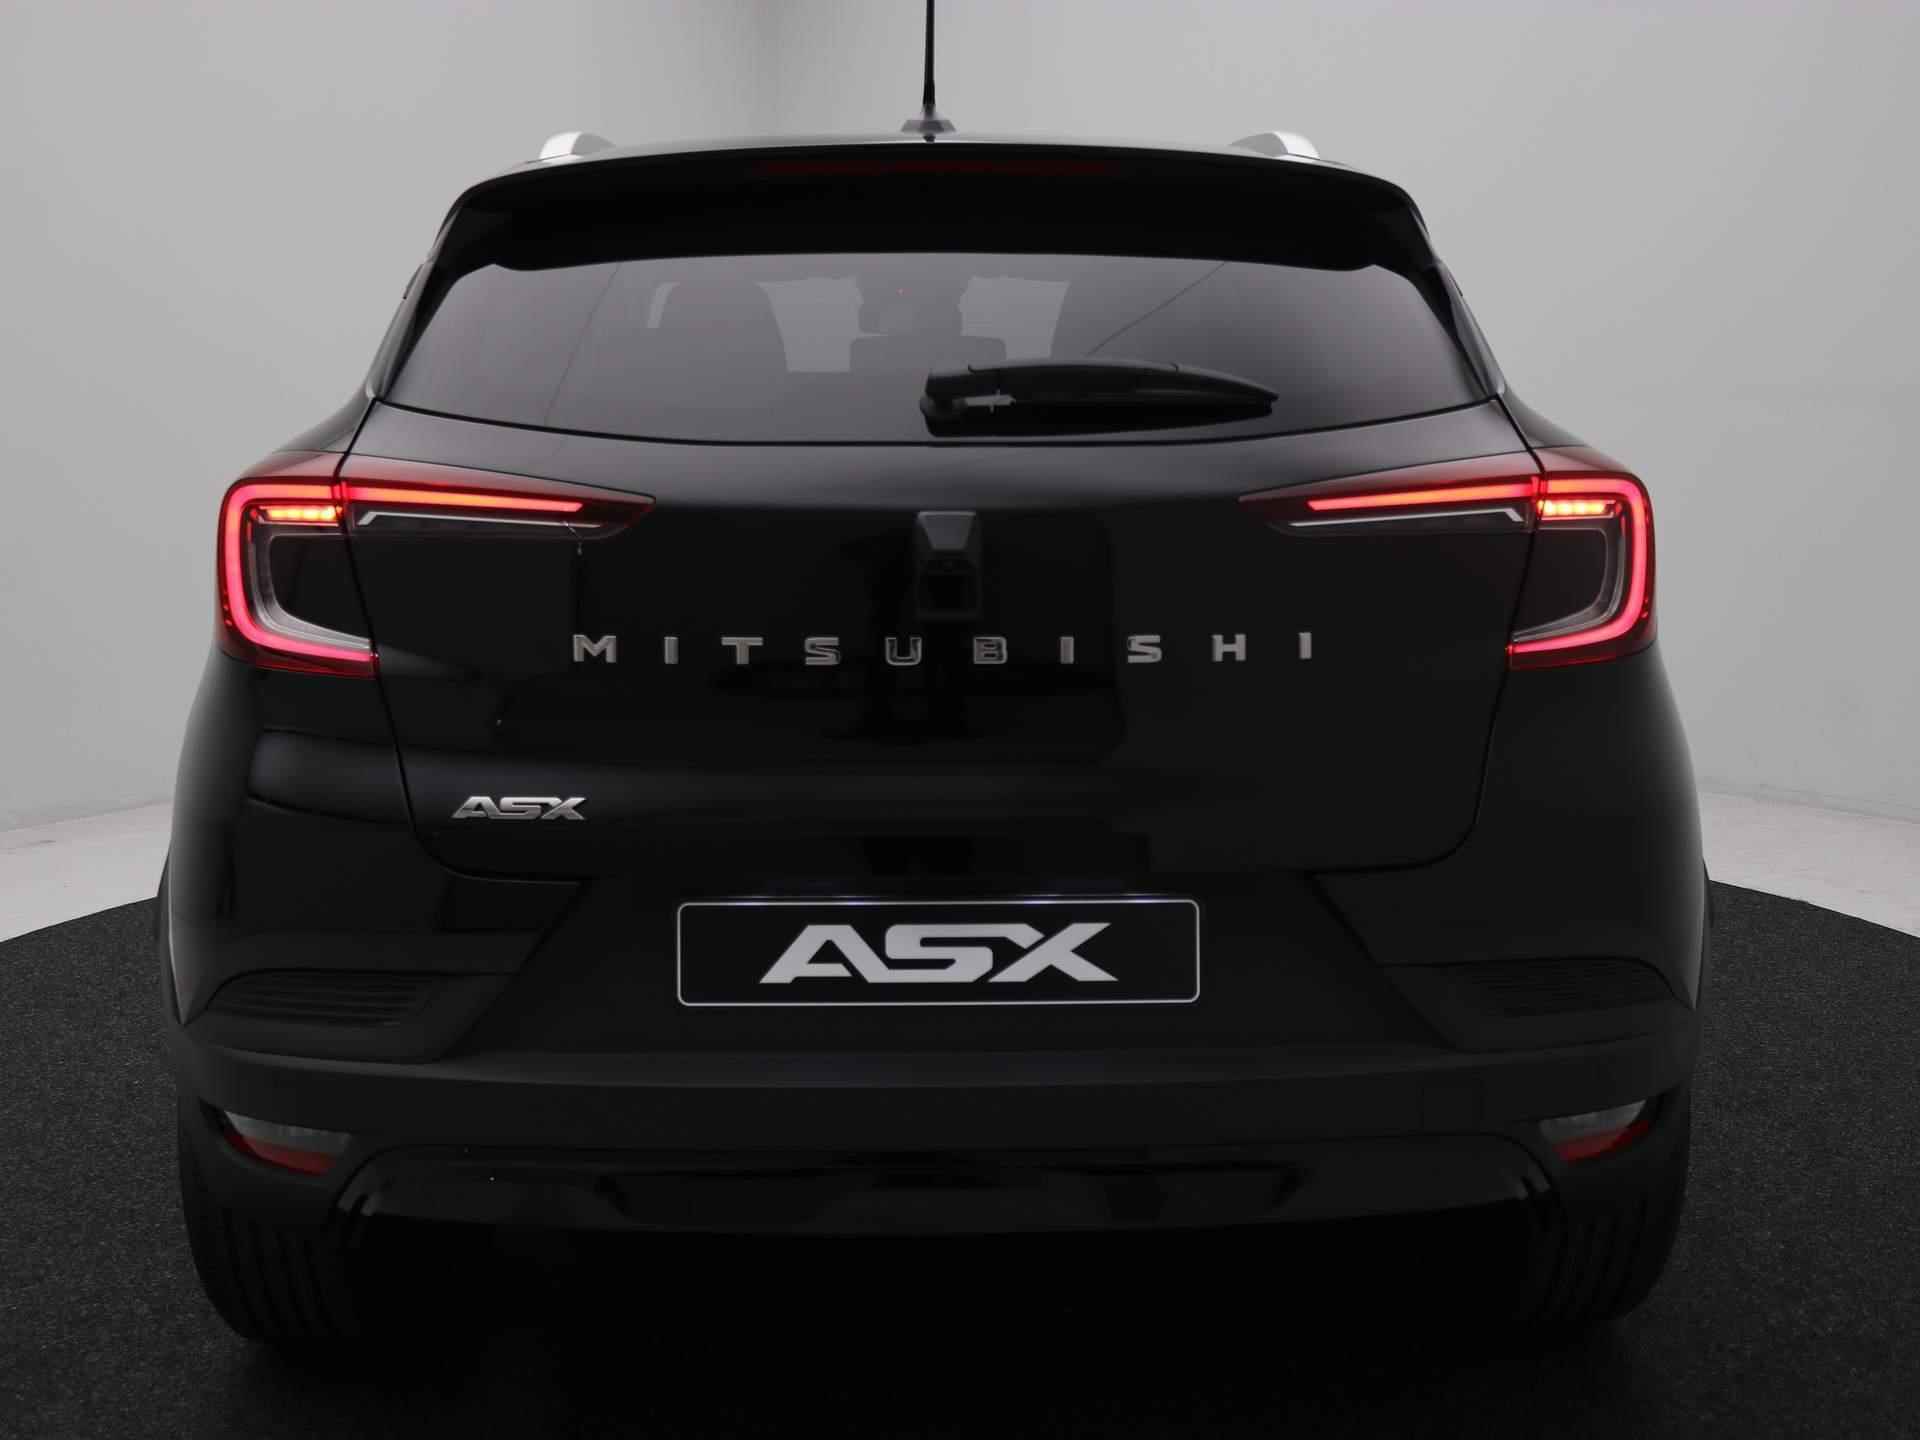 Mitsubishi ASX 1.0 MPI Turbo Intense / Korting € 4.750,- / Rijklaarprijs € 26.870,- / Direct leverbaar / Android Auto & Apple Carplay / Achteruitrijcamera / Cruise Control / Parkeersensoren voor & achter / Climate Control / - 23/65